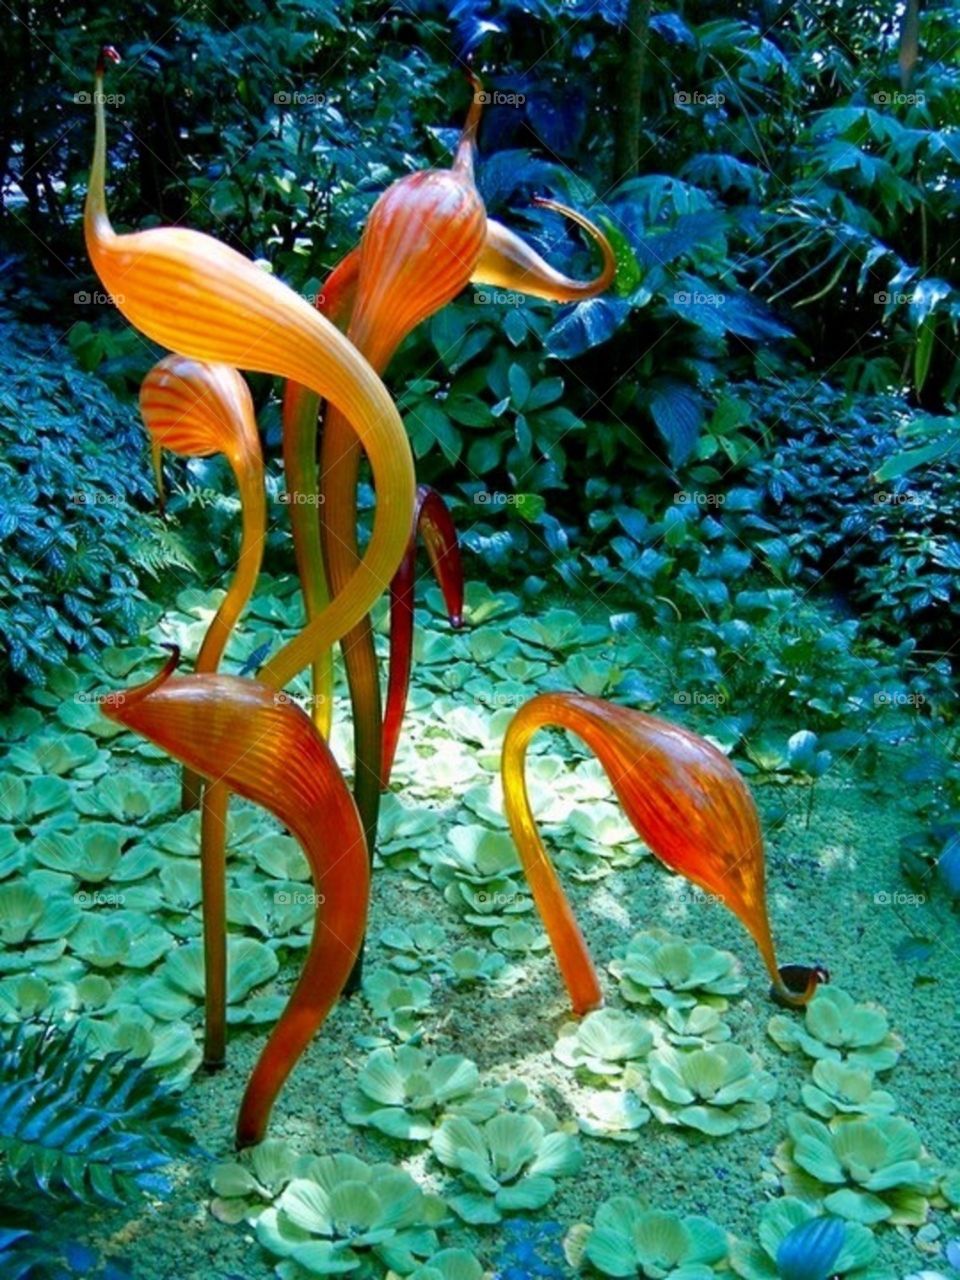 Garden Glass Art